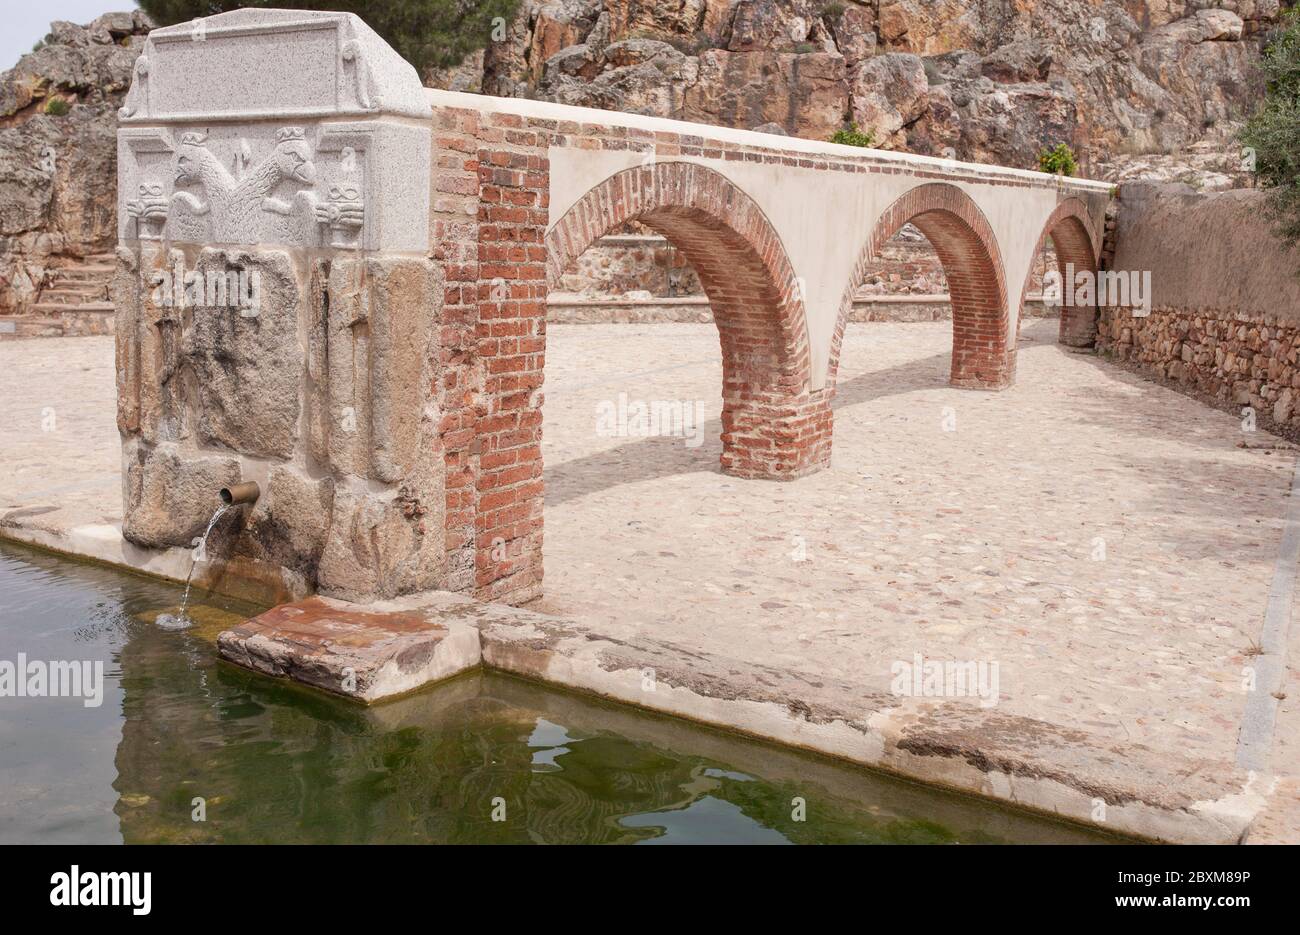 Palomas Pillar Fountain construit au XVIe siècle, Hornachos, Espagne. Armoiries impériales de Carlos V sculptées au milieu Banque D'Images